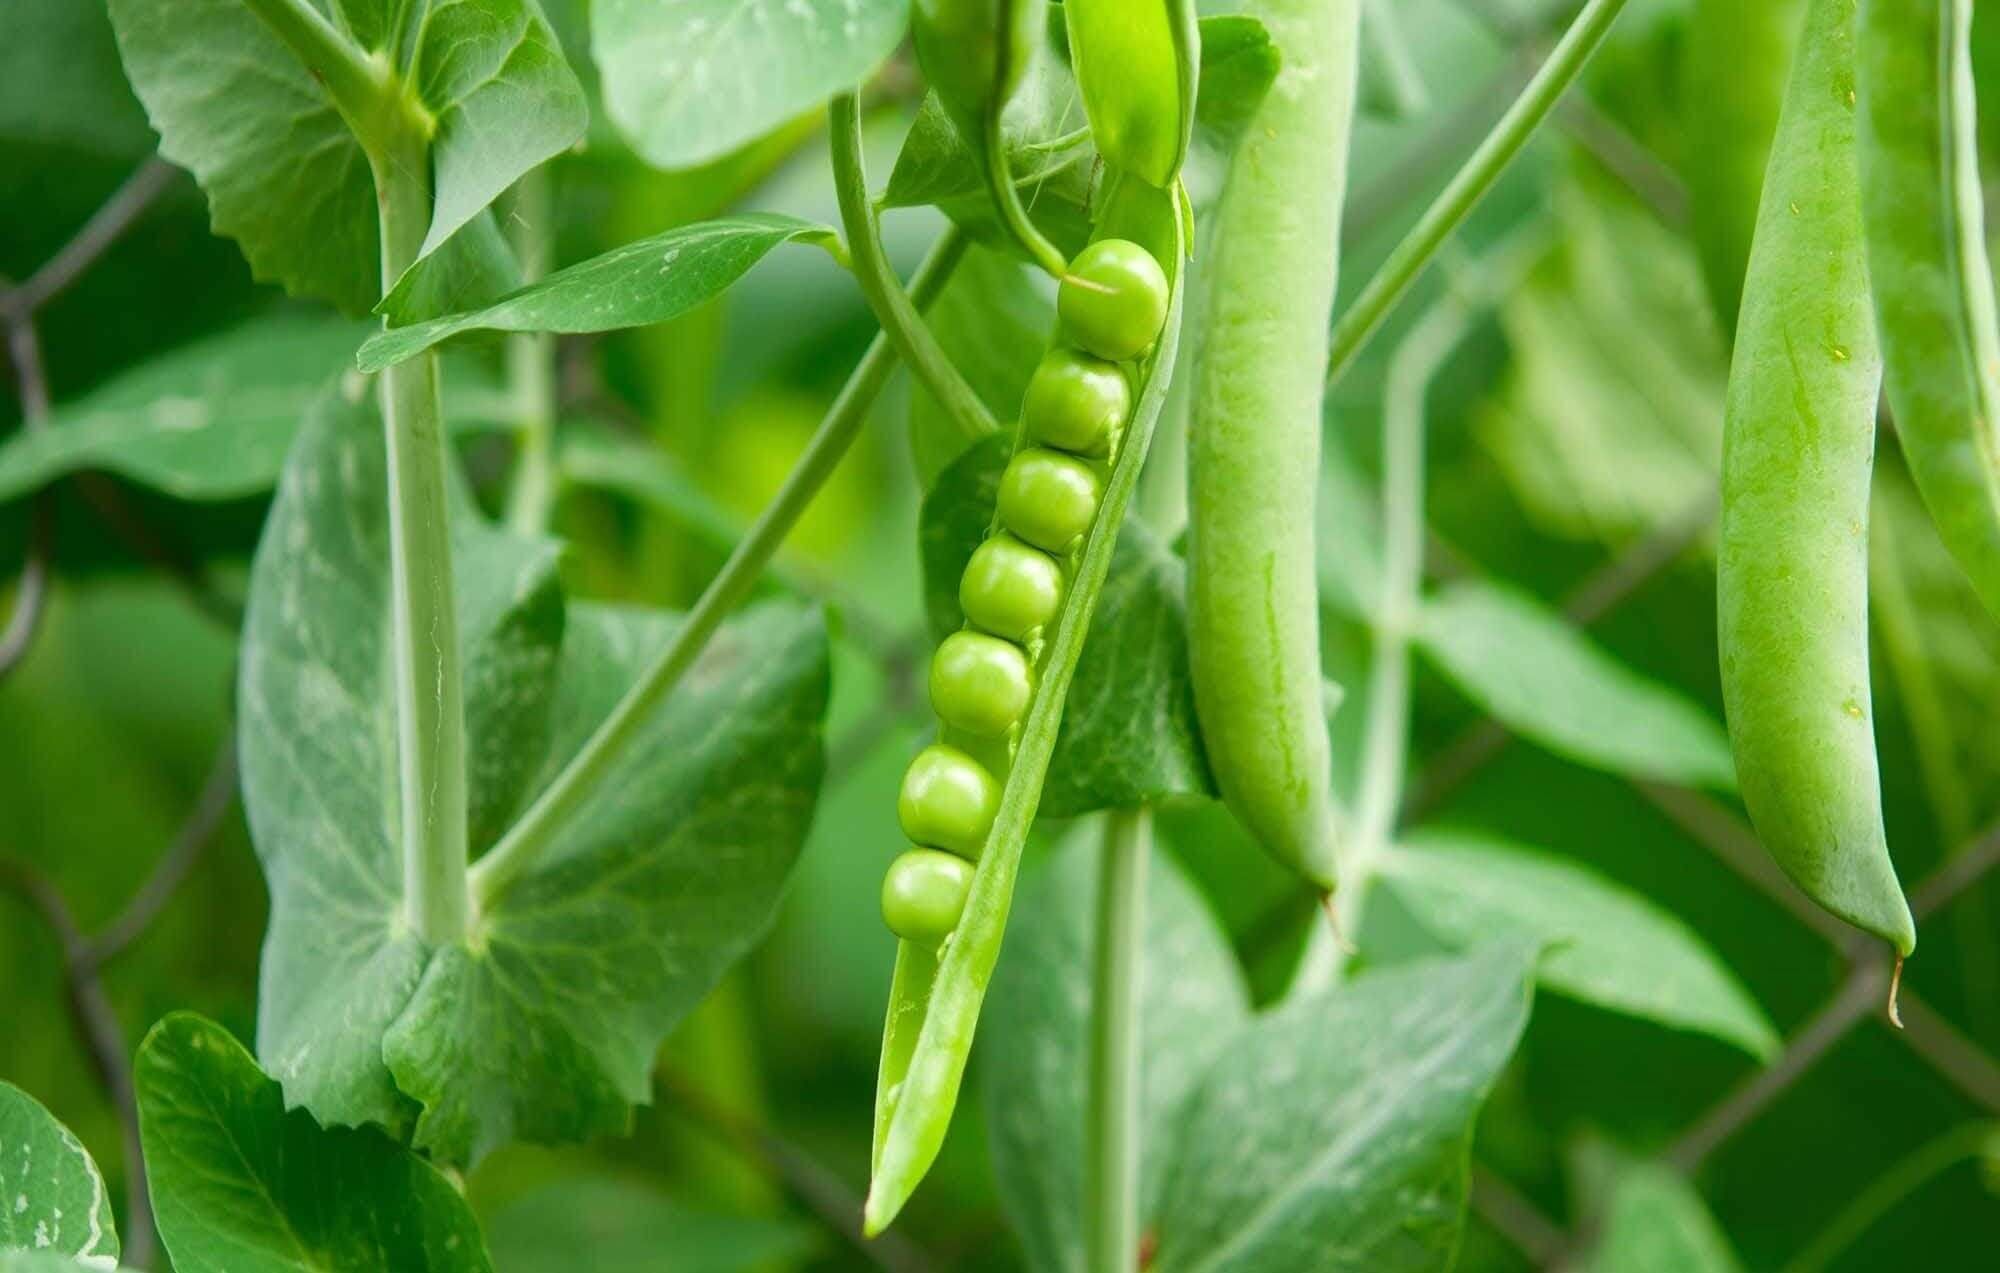 Hybrid-agri peas